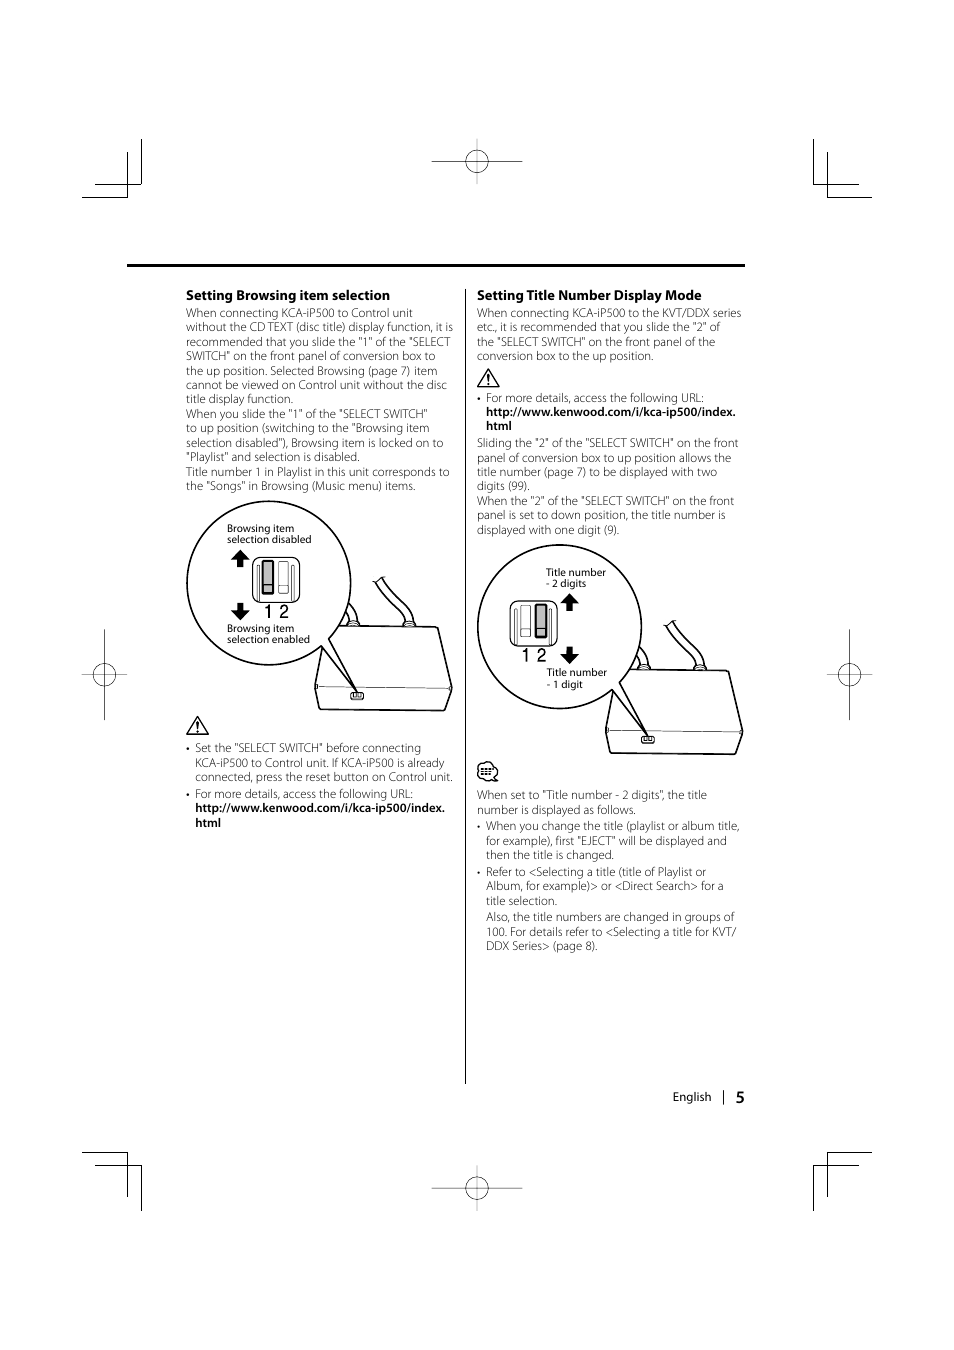 Kenwood KCA-iP500 User Manual | Page 5 / 84